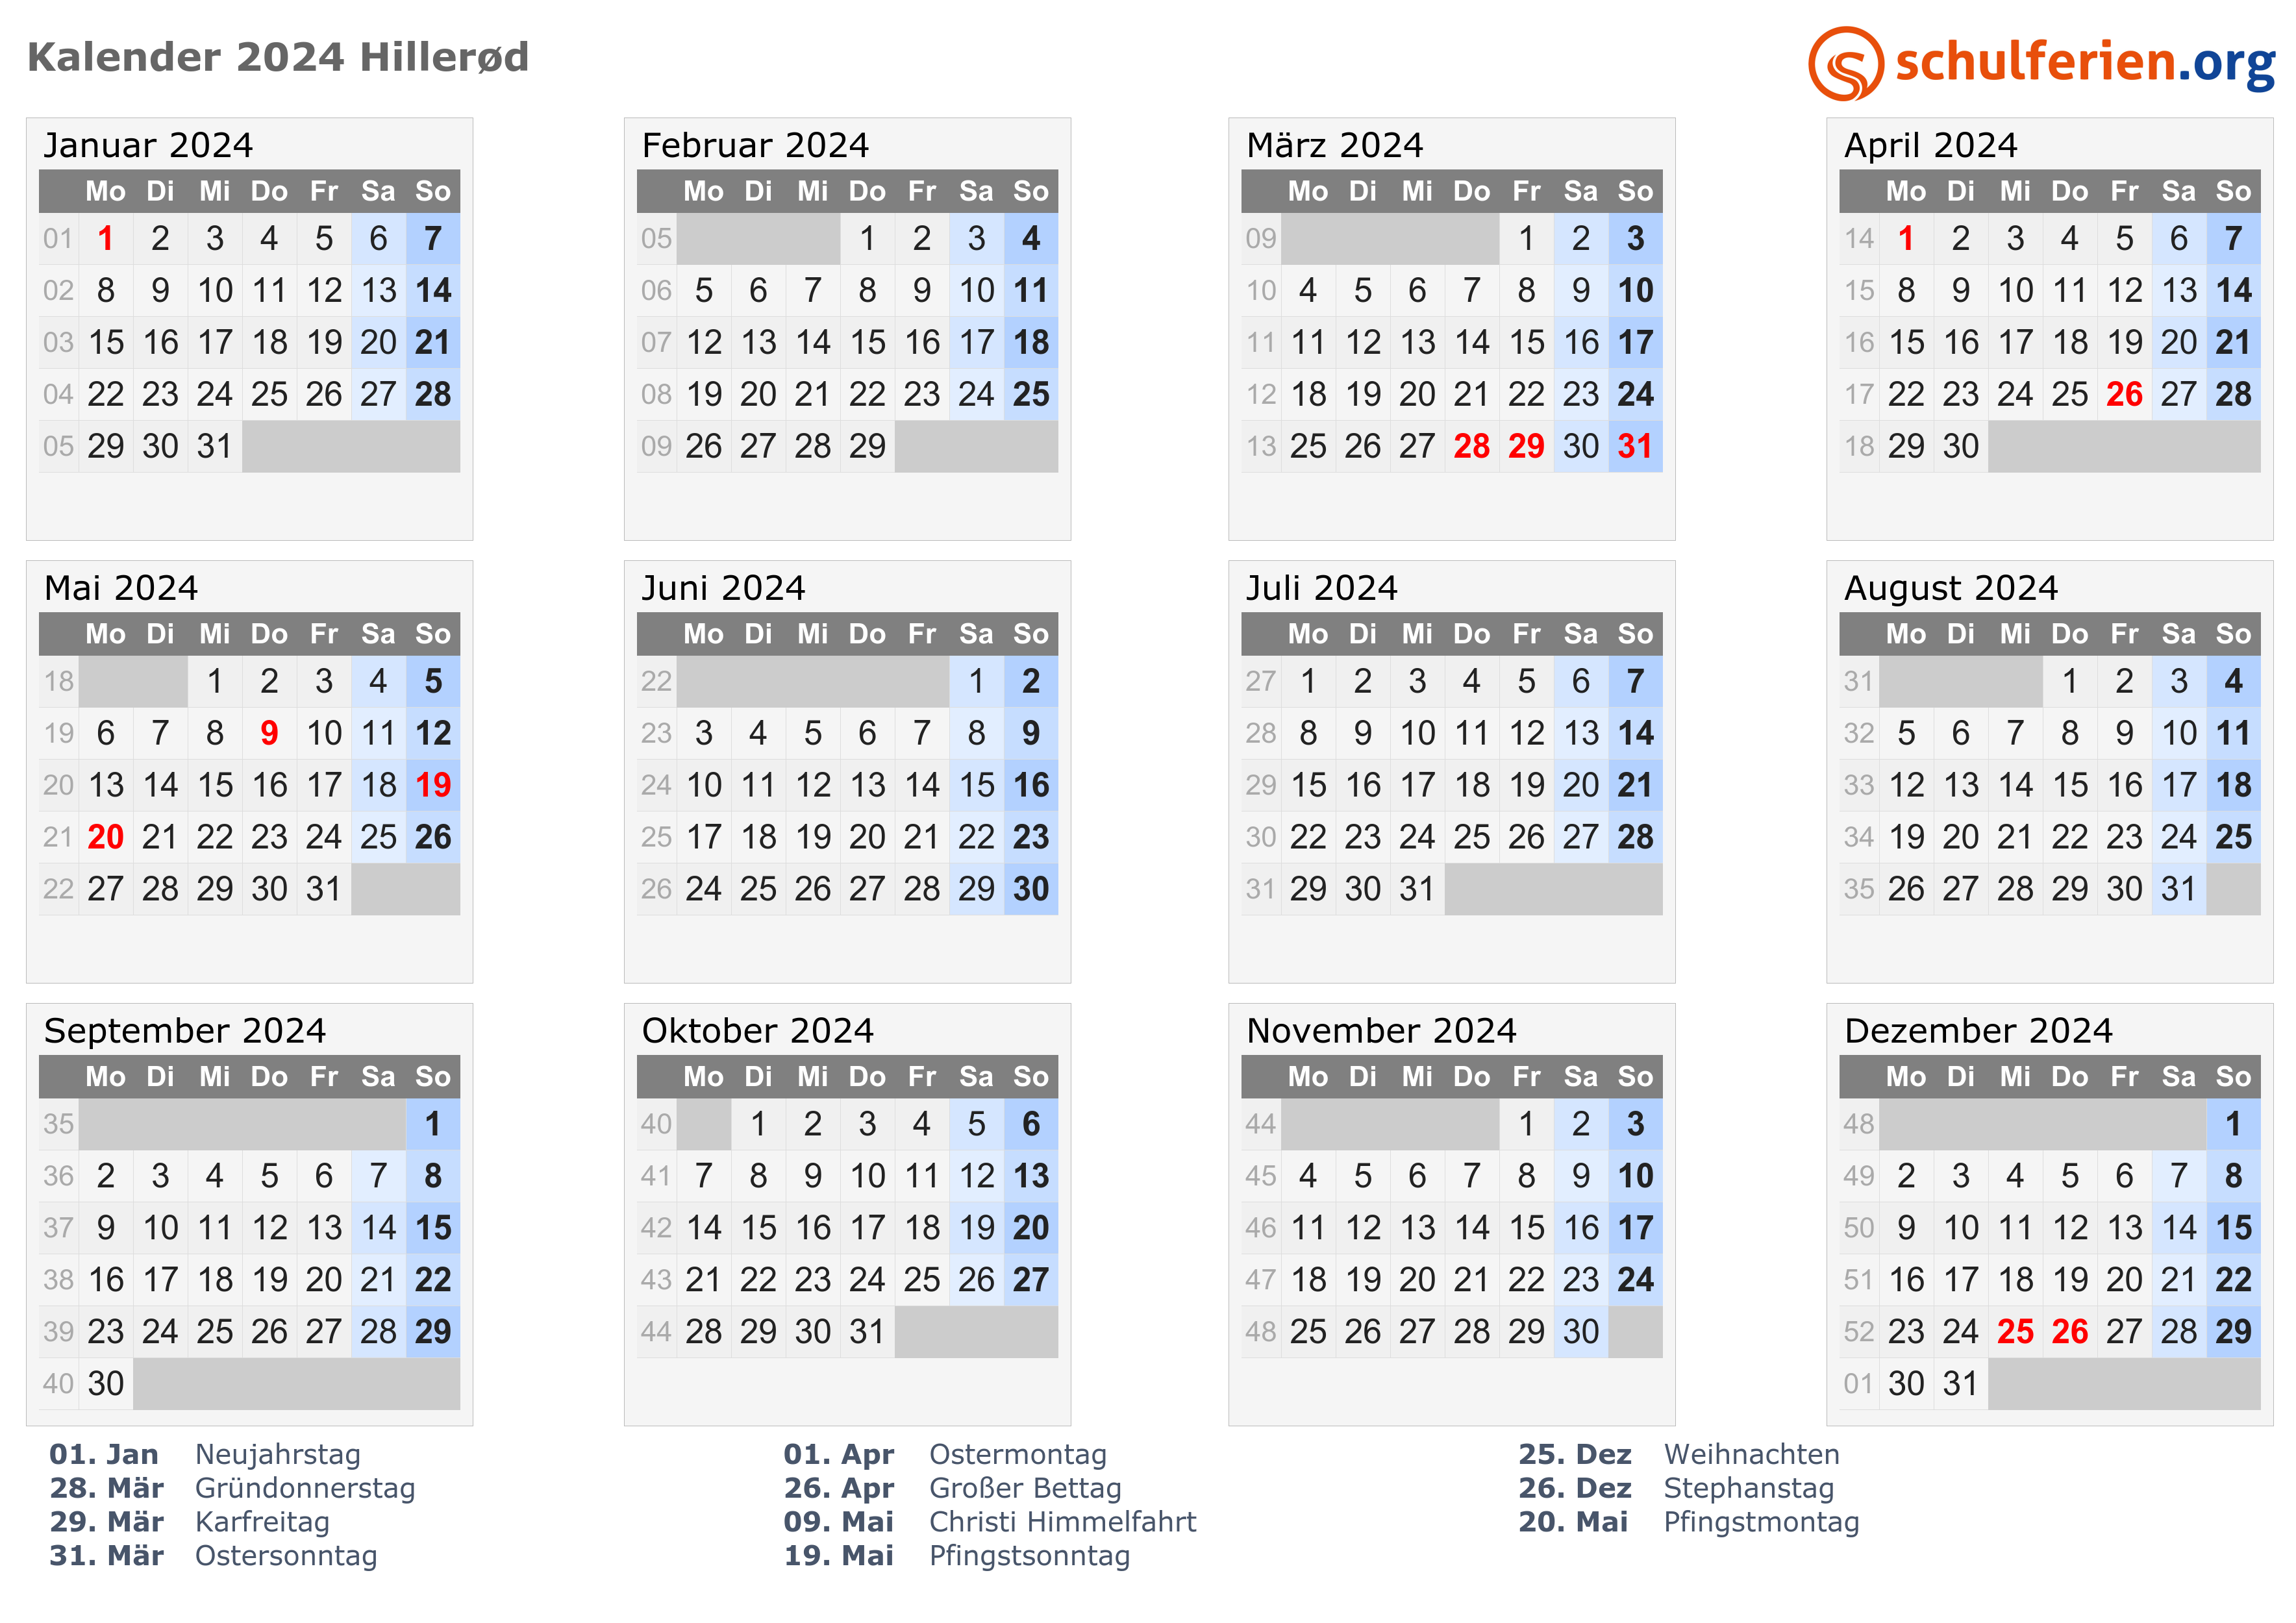 Calendar 2024 Wallpaper Easy to Use Calendar App 2024